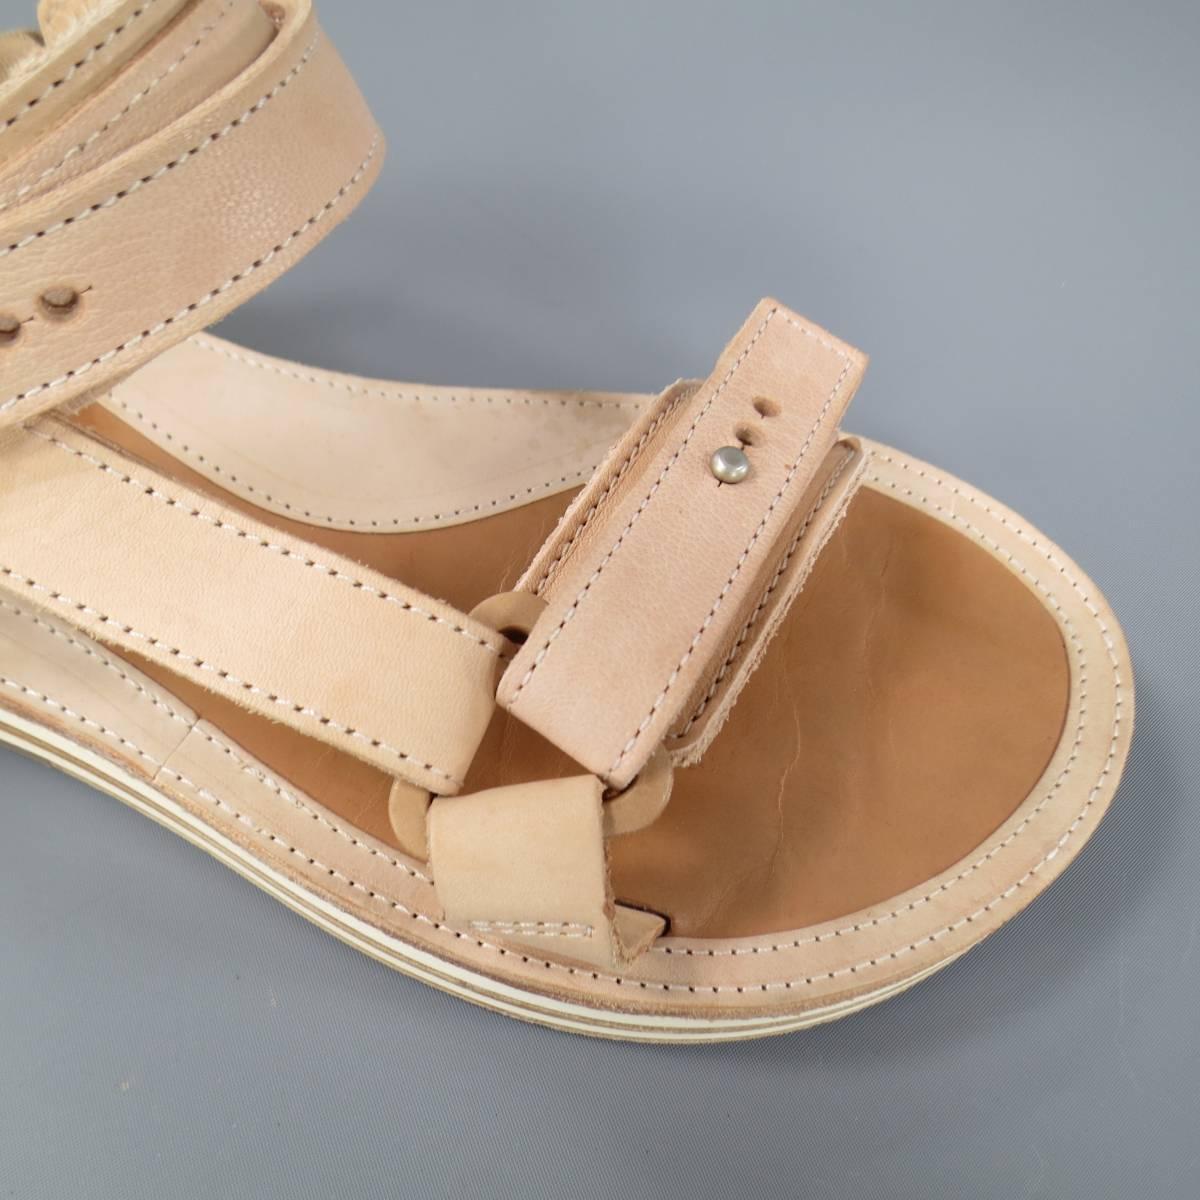 SACAI X HENDER SCHEME Size 10 Men's Natural Beige Leather Sandals 3